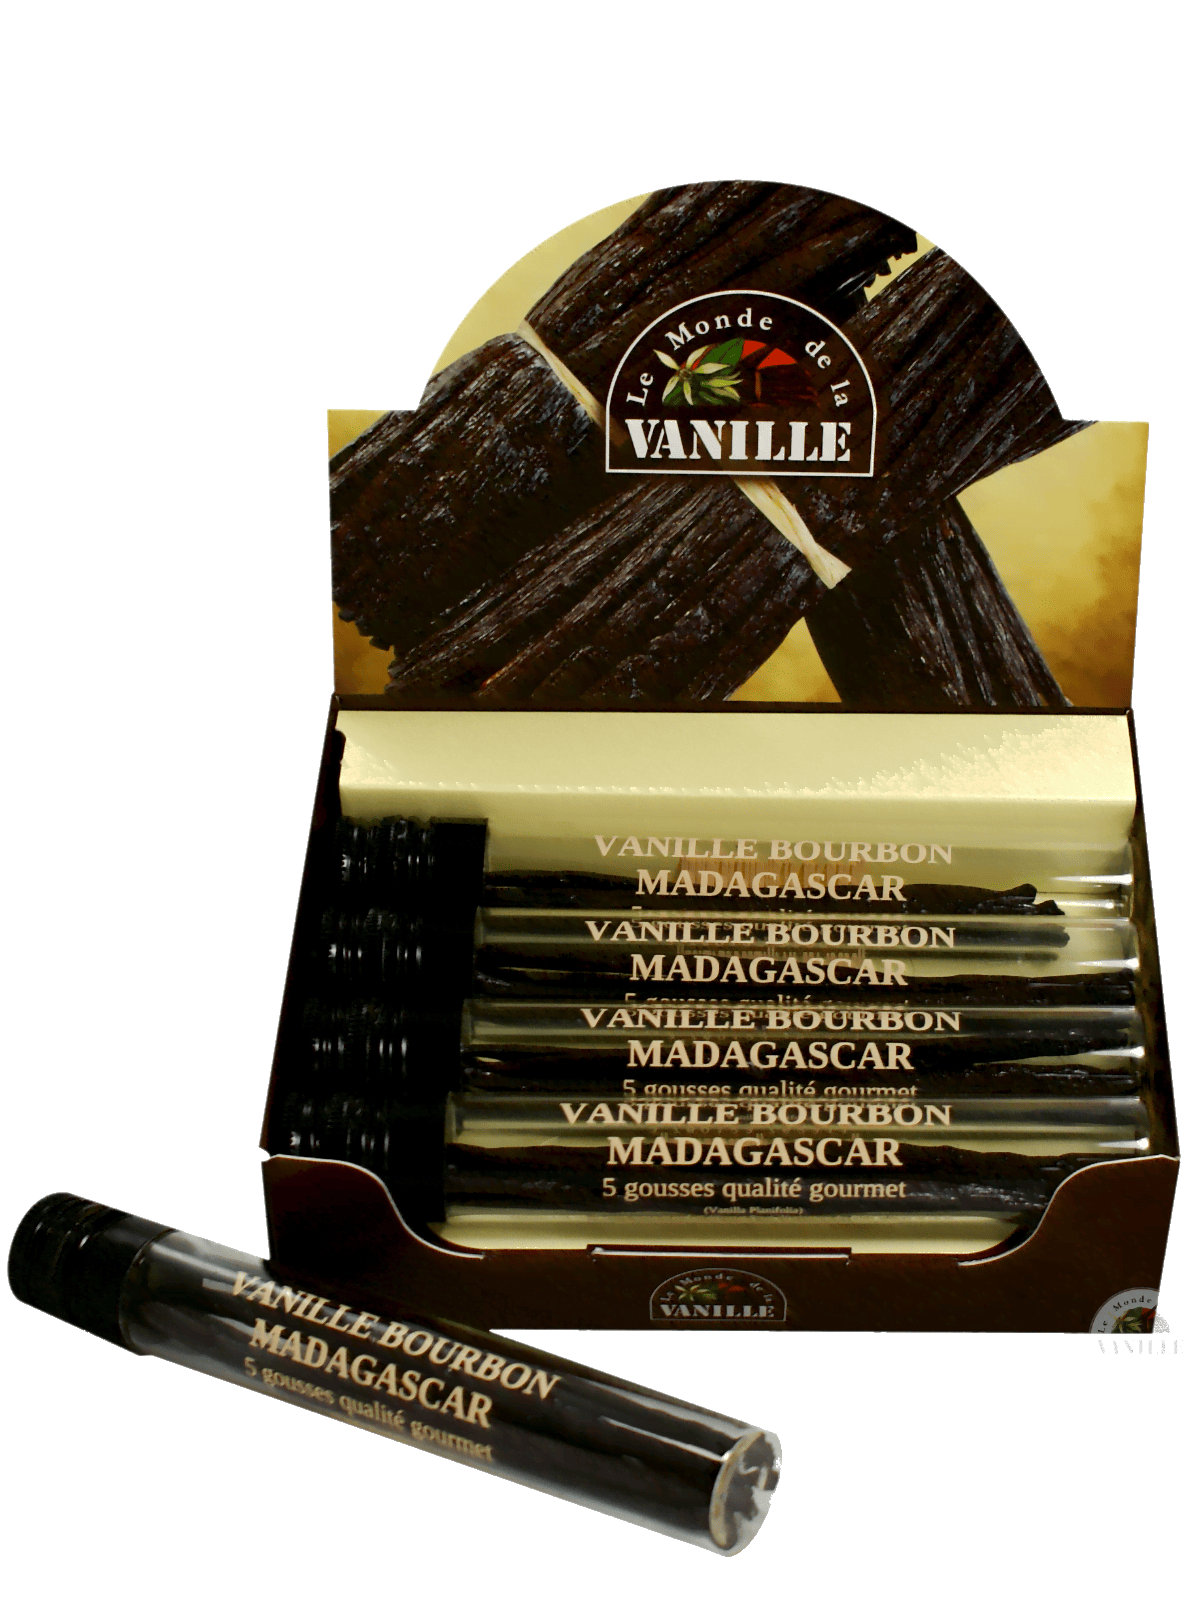 display 10 vanilletuben madagaskar Le Monde de la vanille